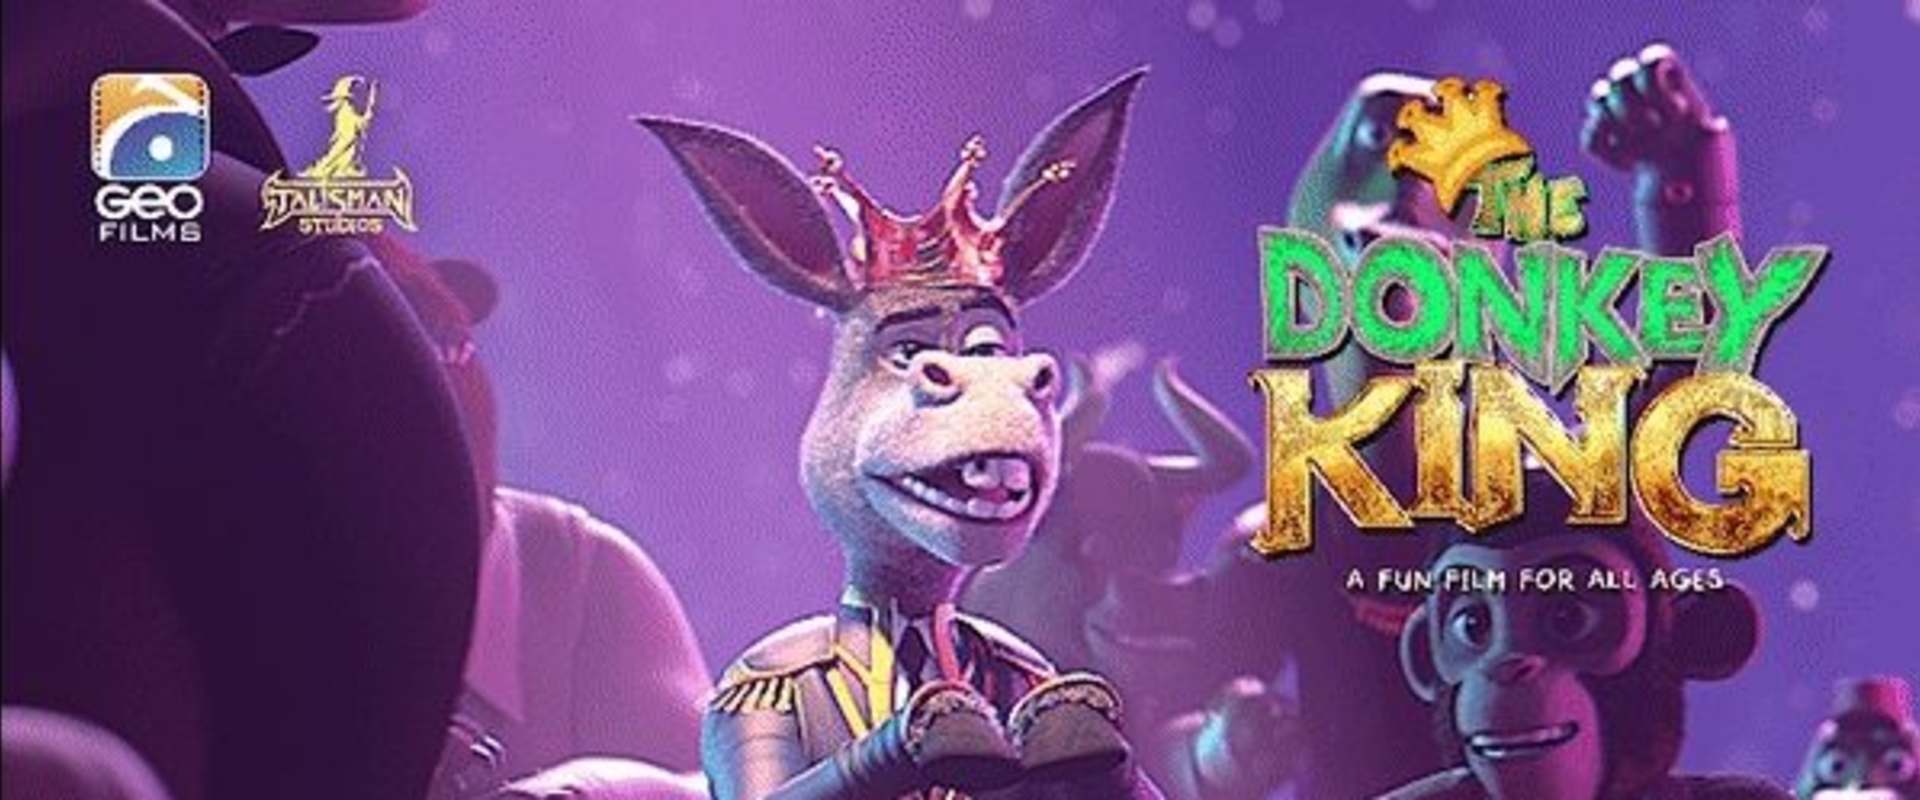 The Donkey King background 2